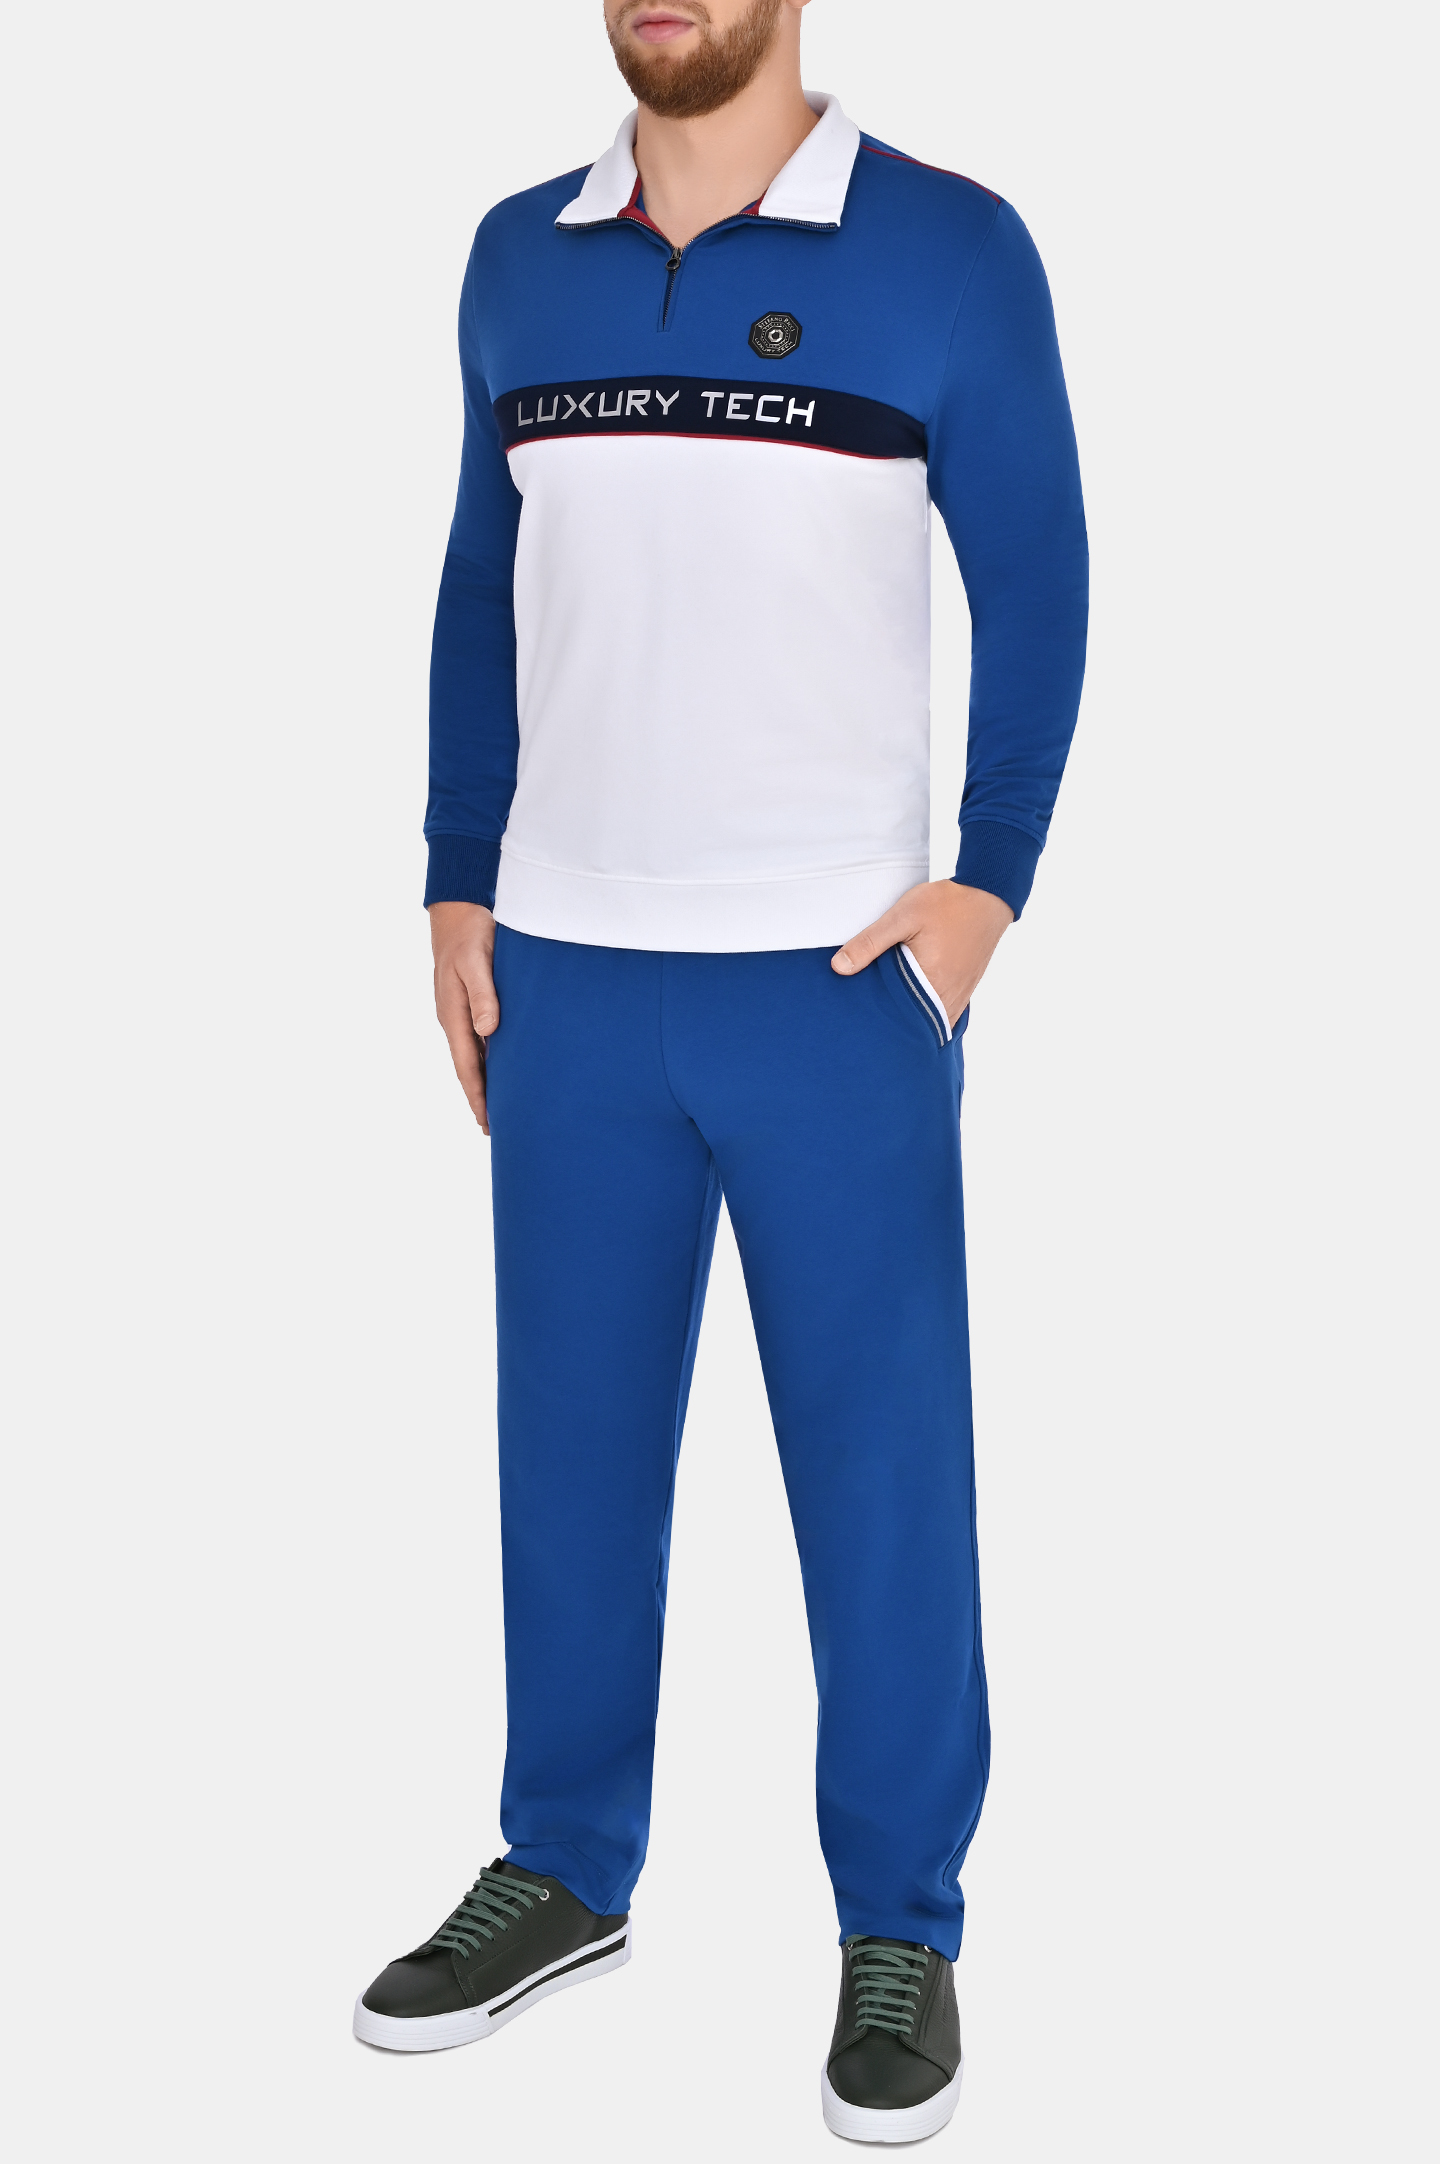 Куртка спорт STEFANO RICCI K111021L01 T23257, цвет: Синий, Мужской